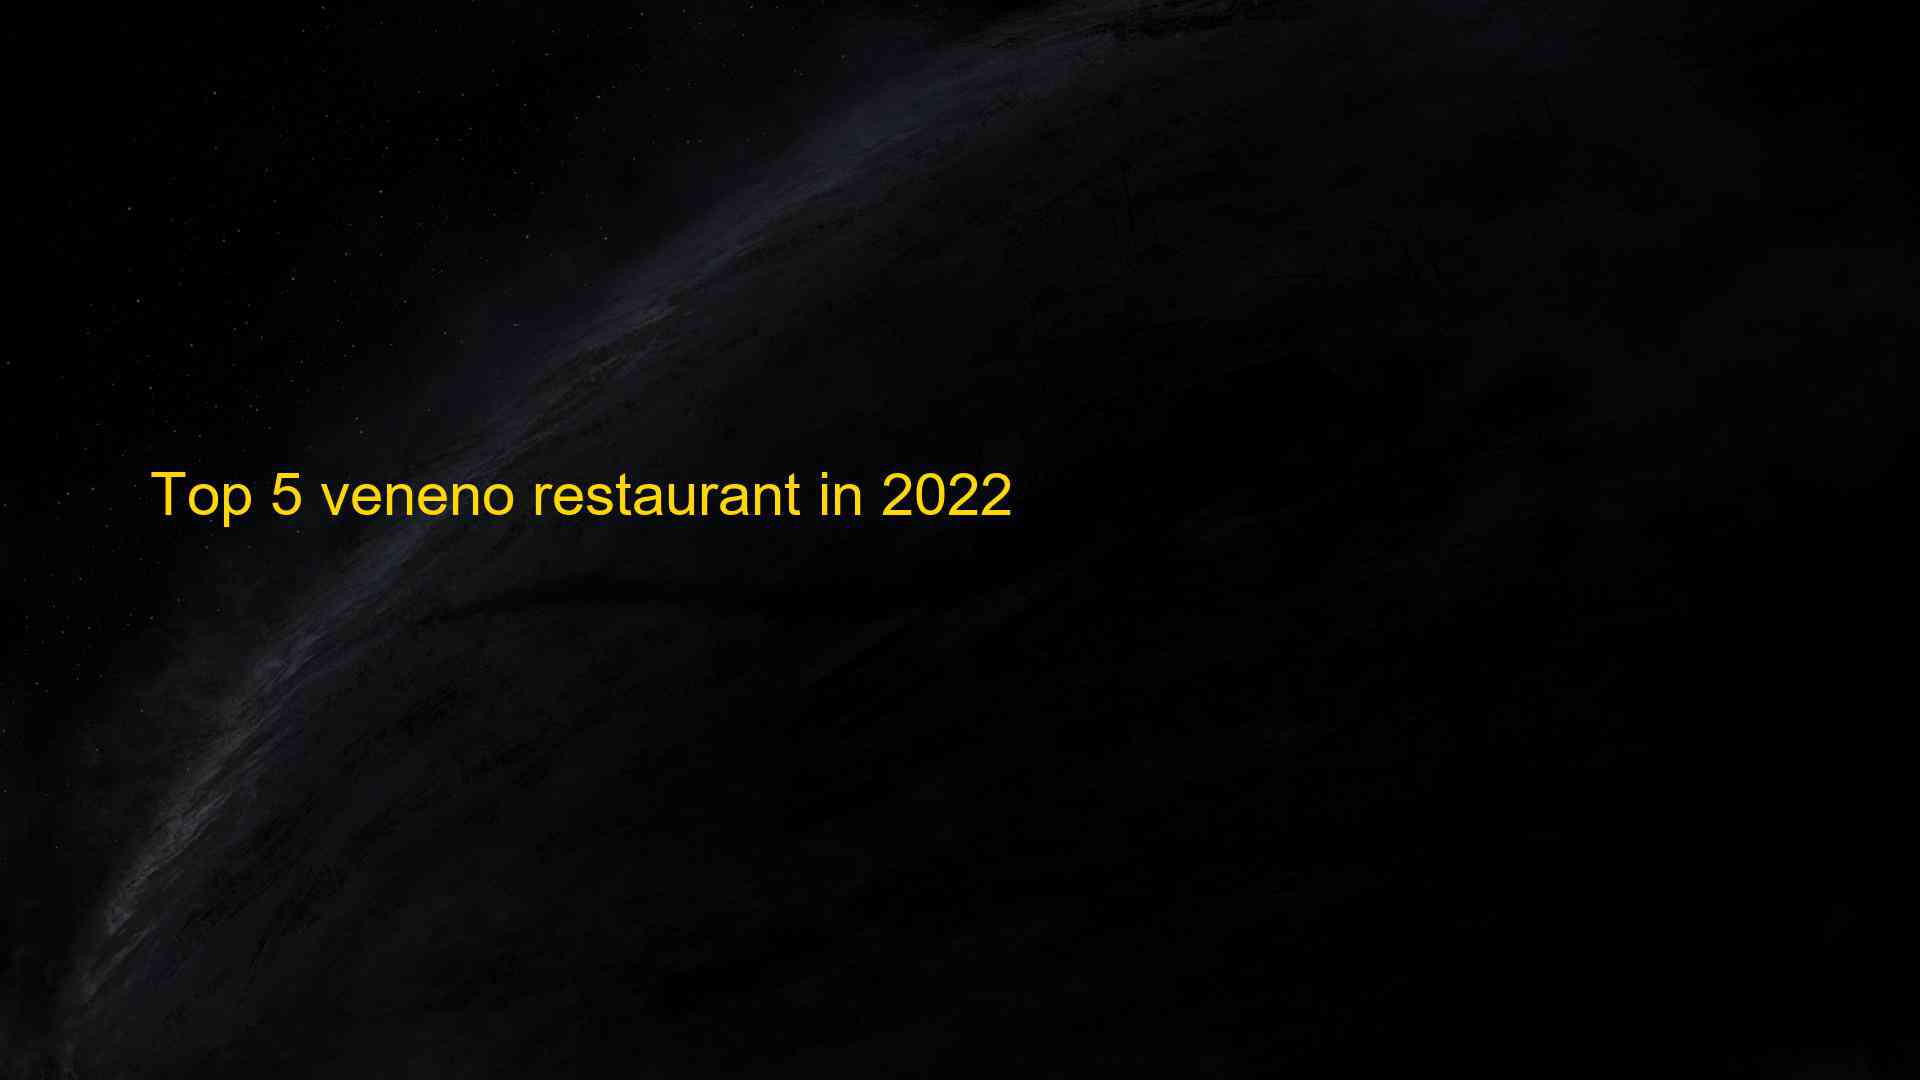 Top 5 veneno restaurant in 2022 1663202300